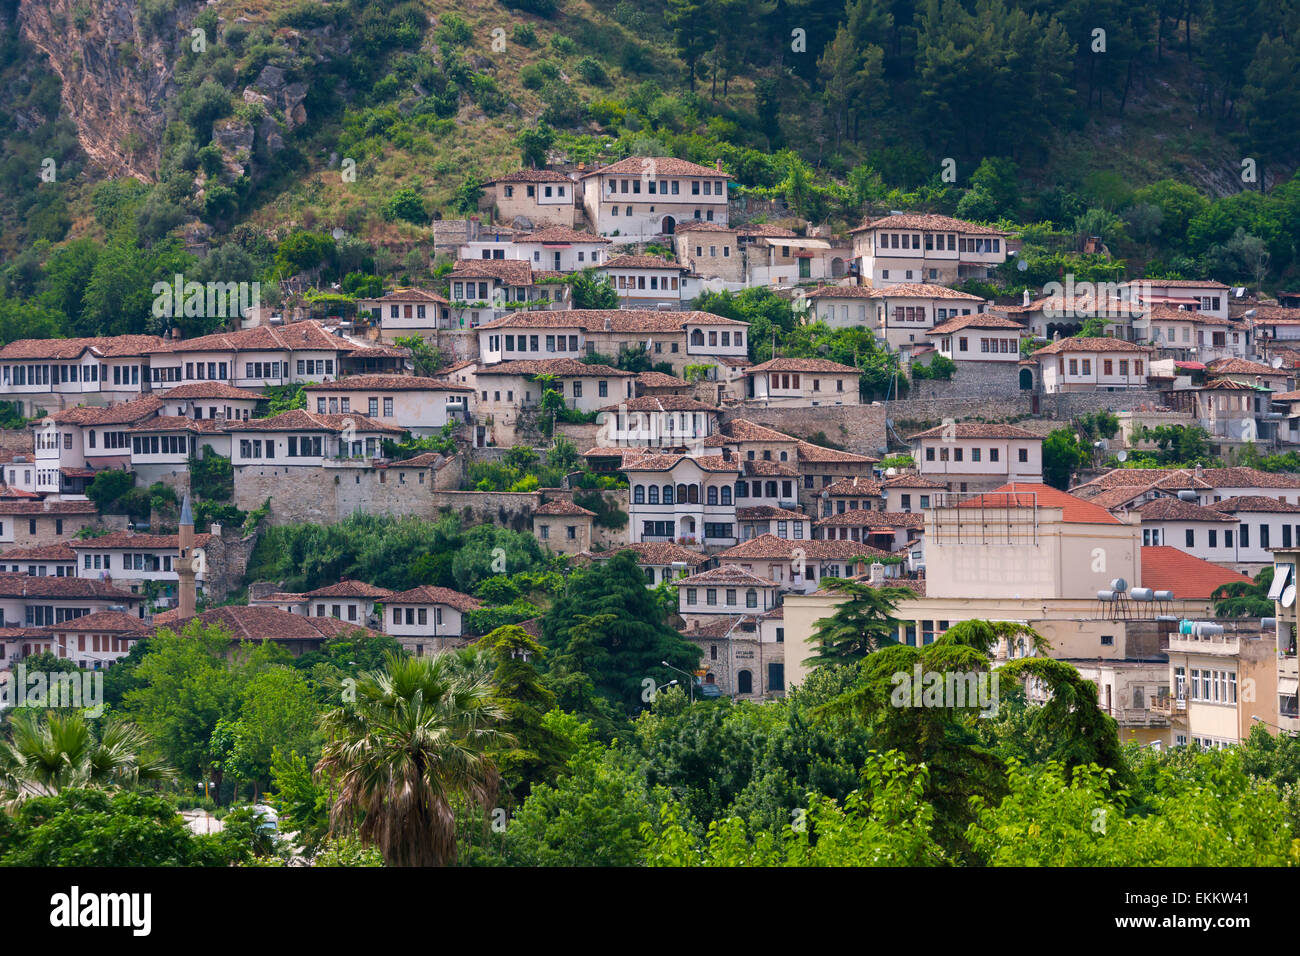 Berat città vecchia, sito Patrimonio Mondiale dell'UNESCO, Albania Foto Stock